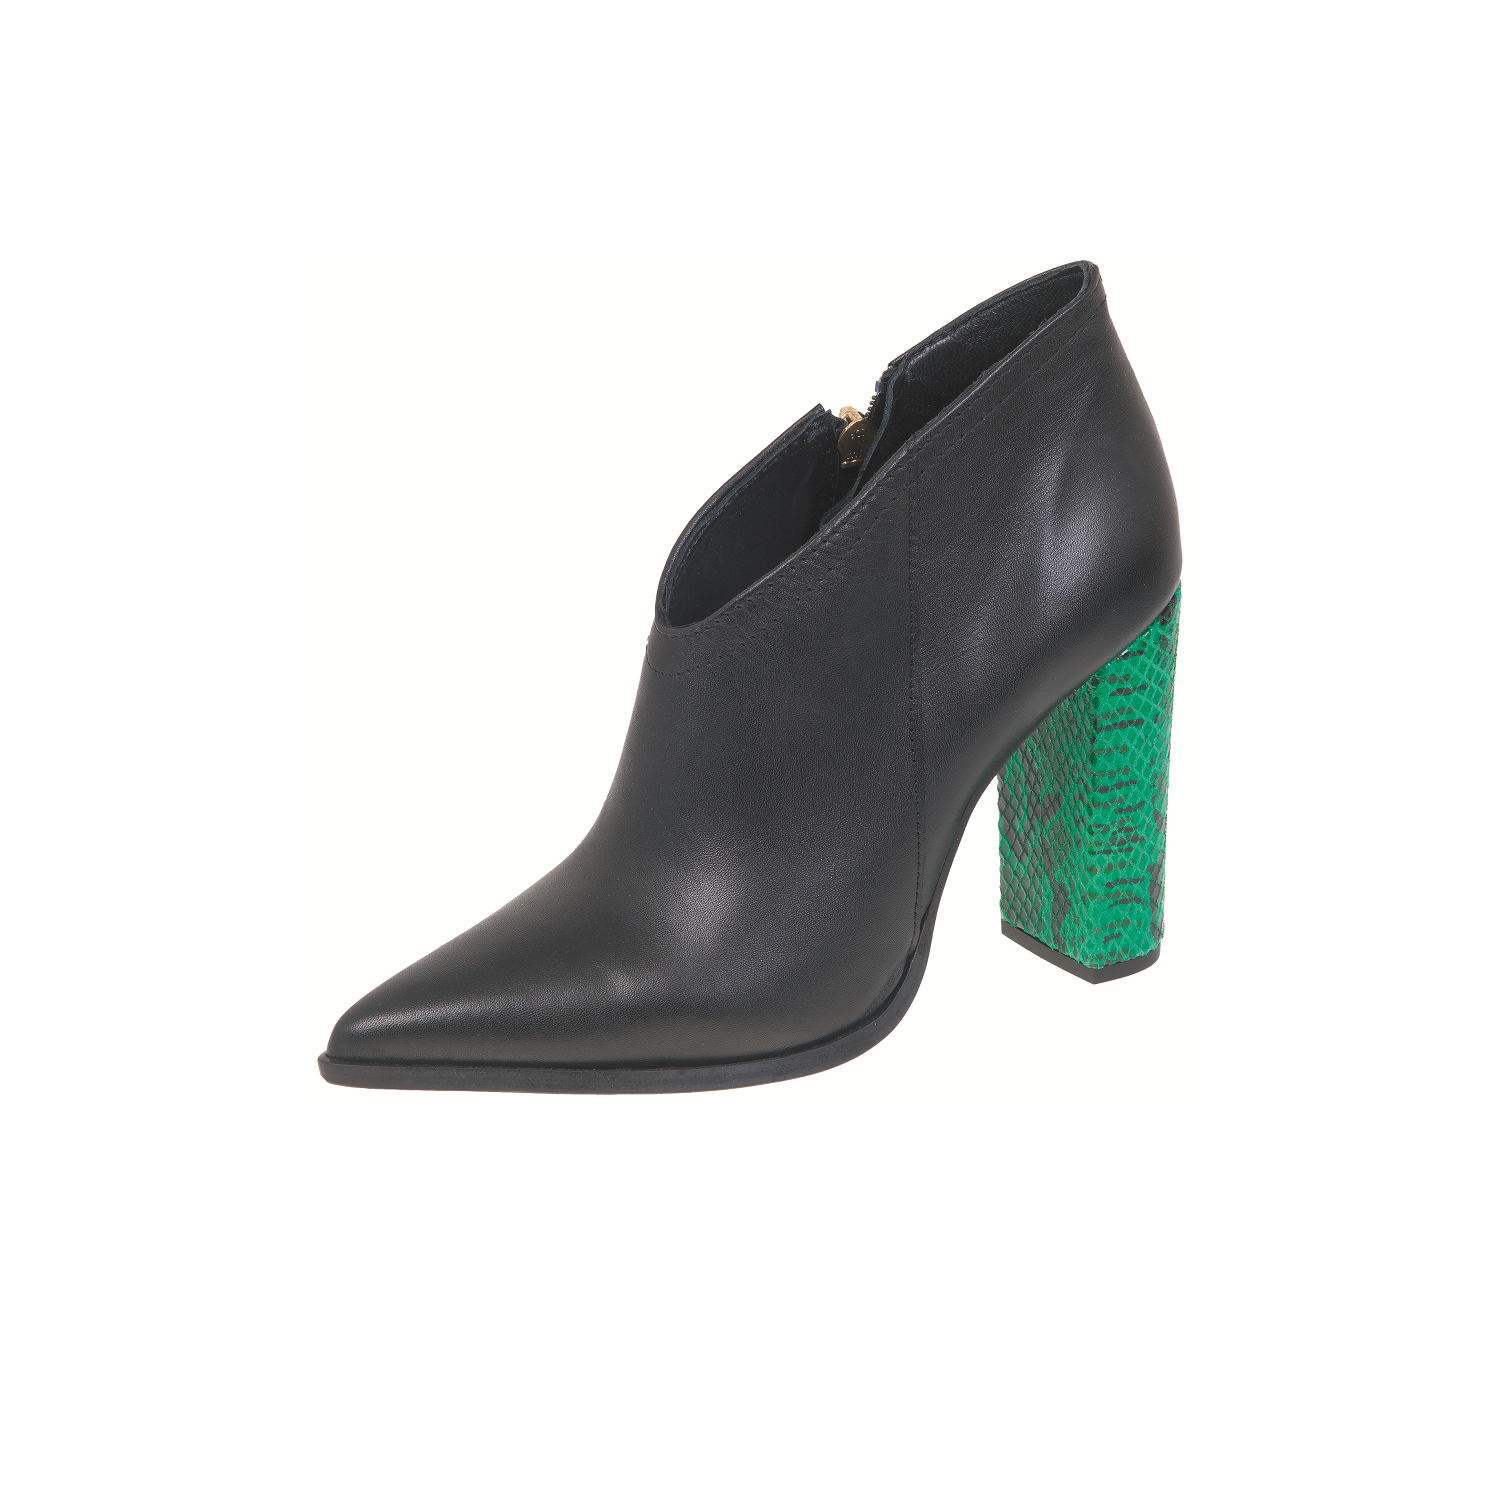 Γυναικεία/Παπούτσια/Μπότες-Μποτάκια/Μποτάκια WALL STREET - Γυναικεία ημίμποτα ADAMS WALL STREET μαύρα πράσινα